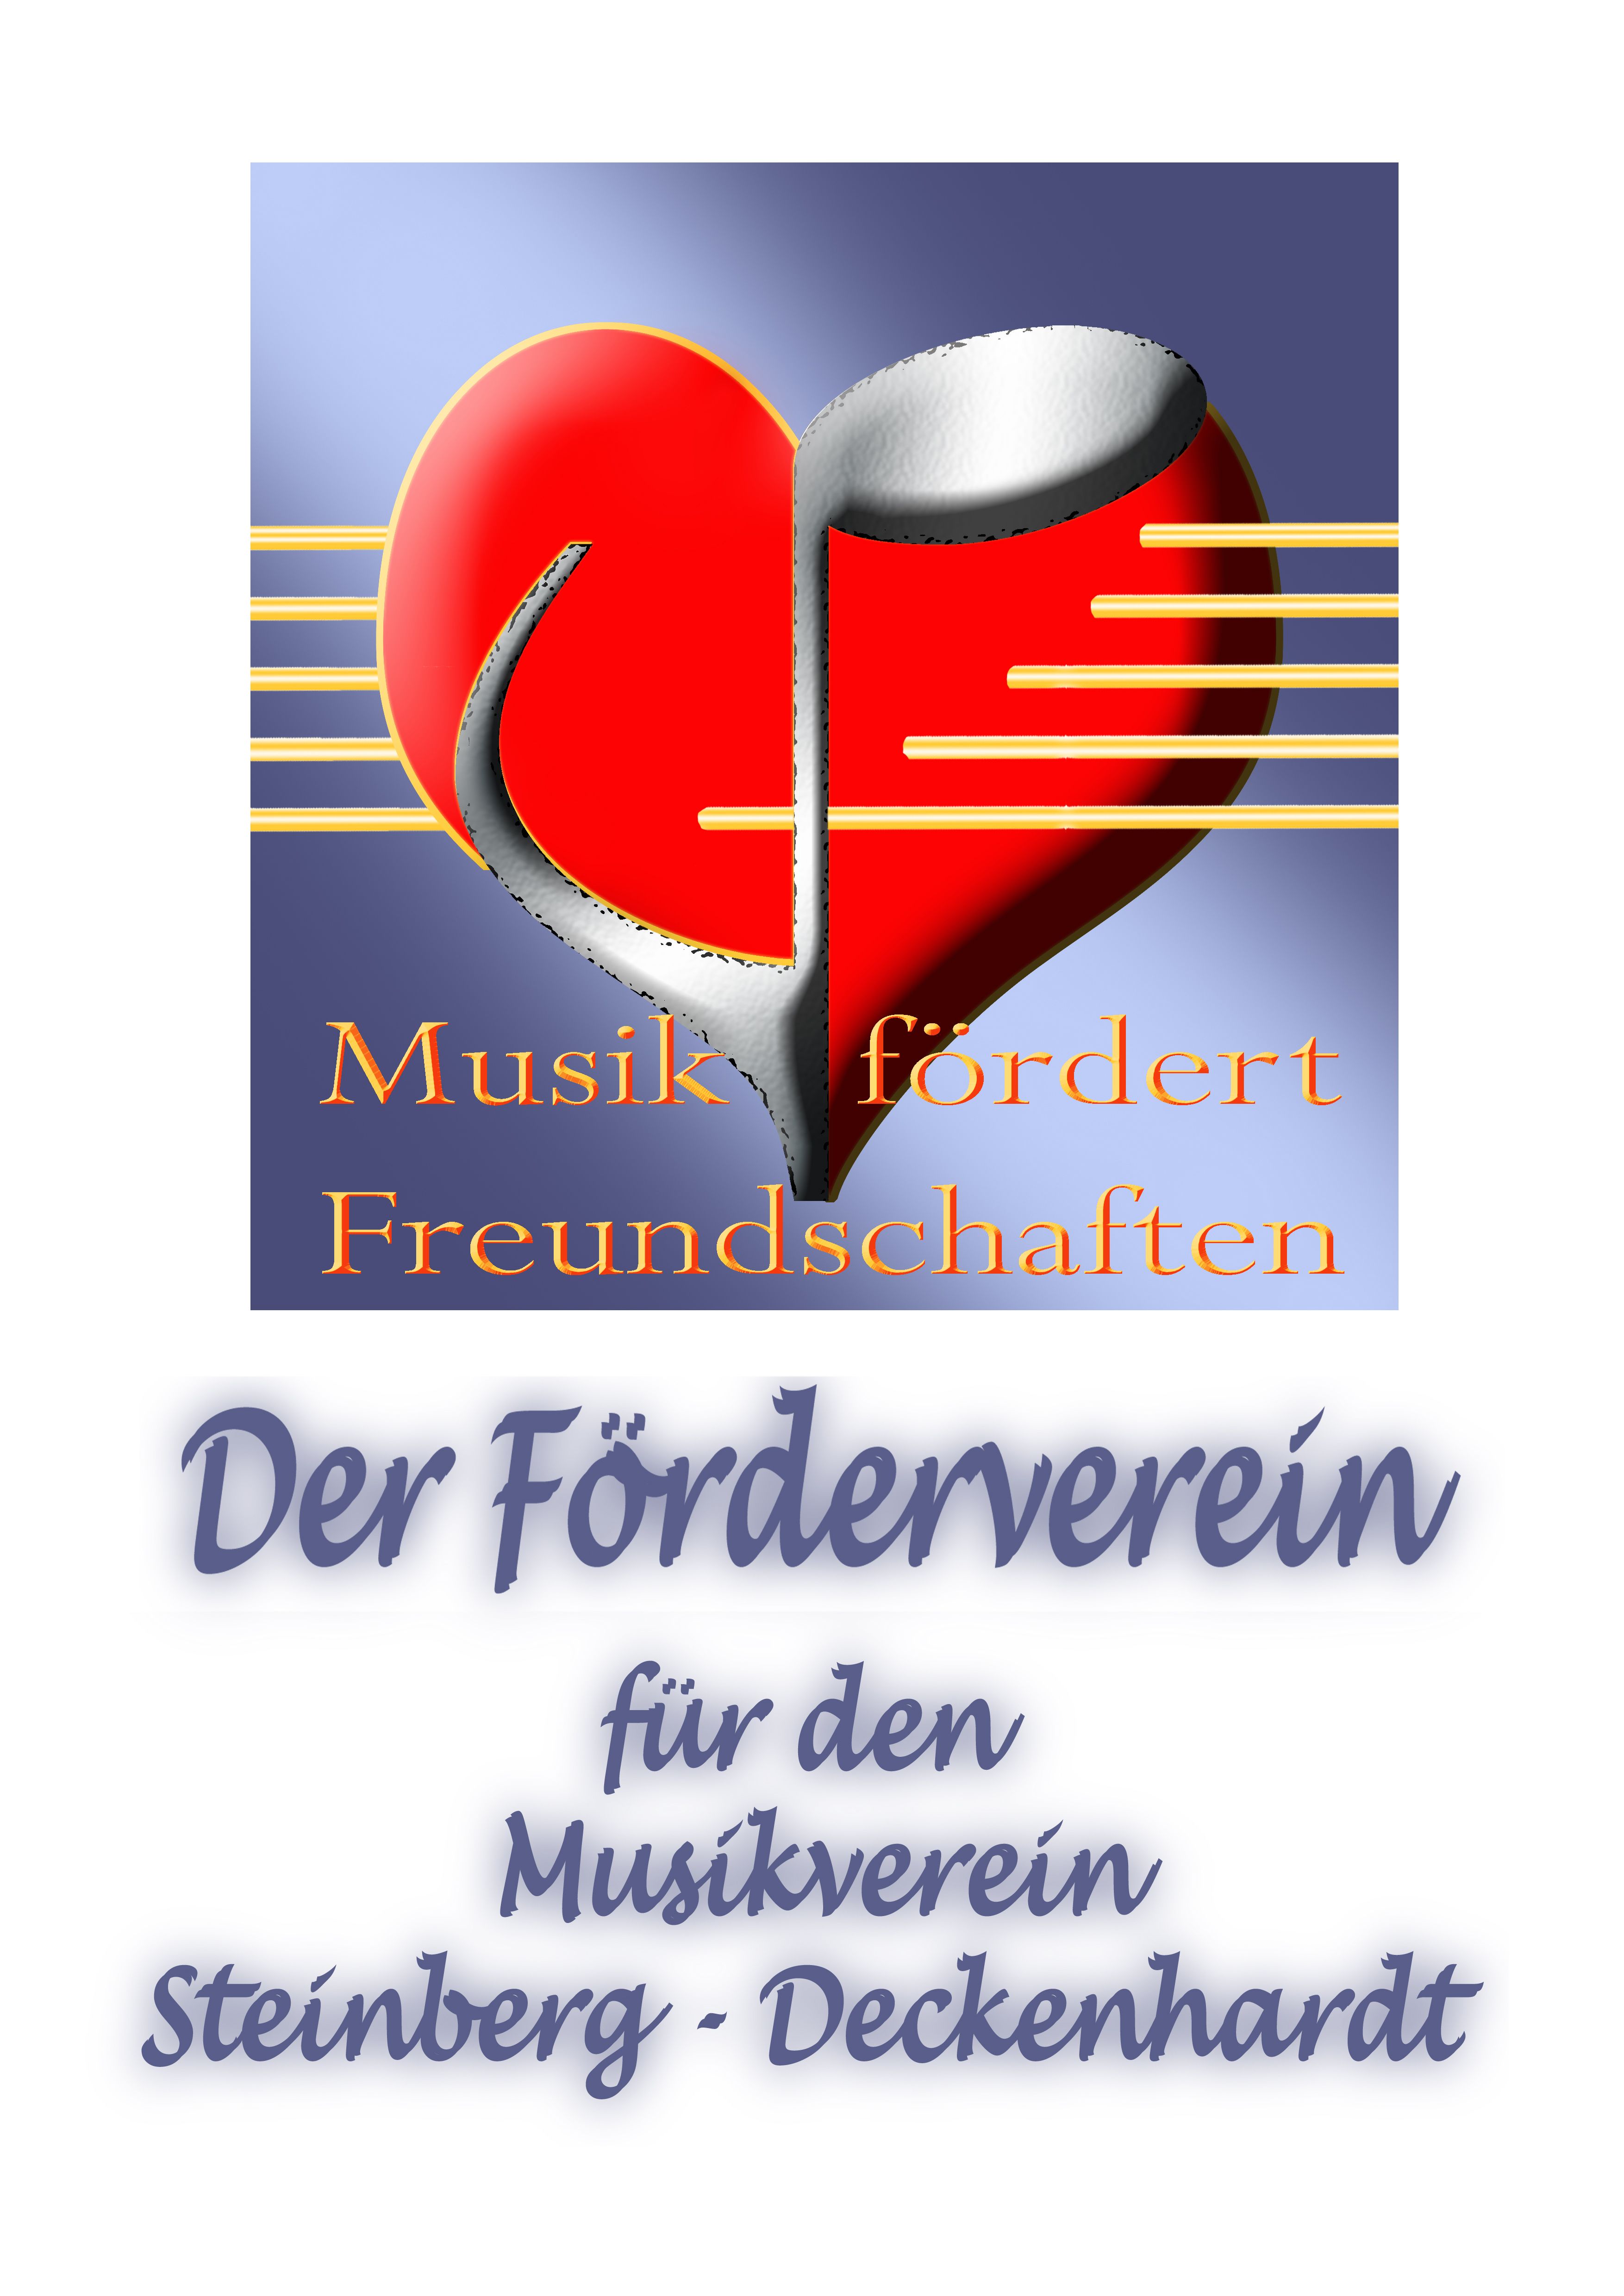 Profilbild des Vereins Förderverein für den Musikverein Steinberg-Deckenhardt e.V.